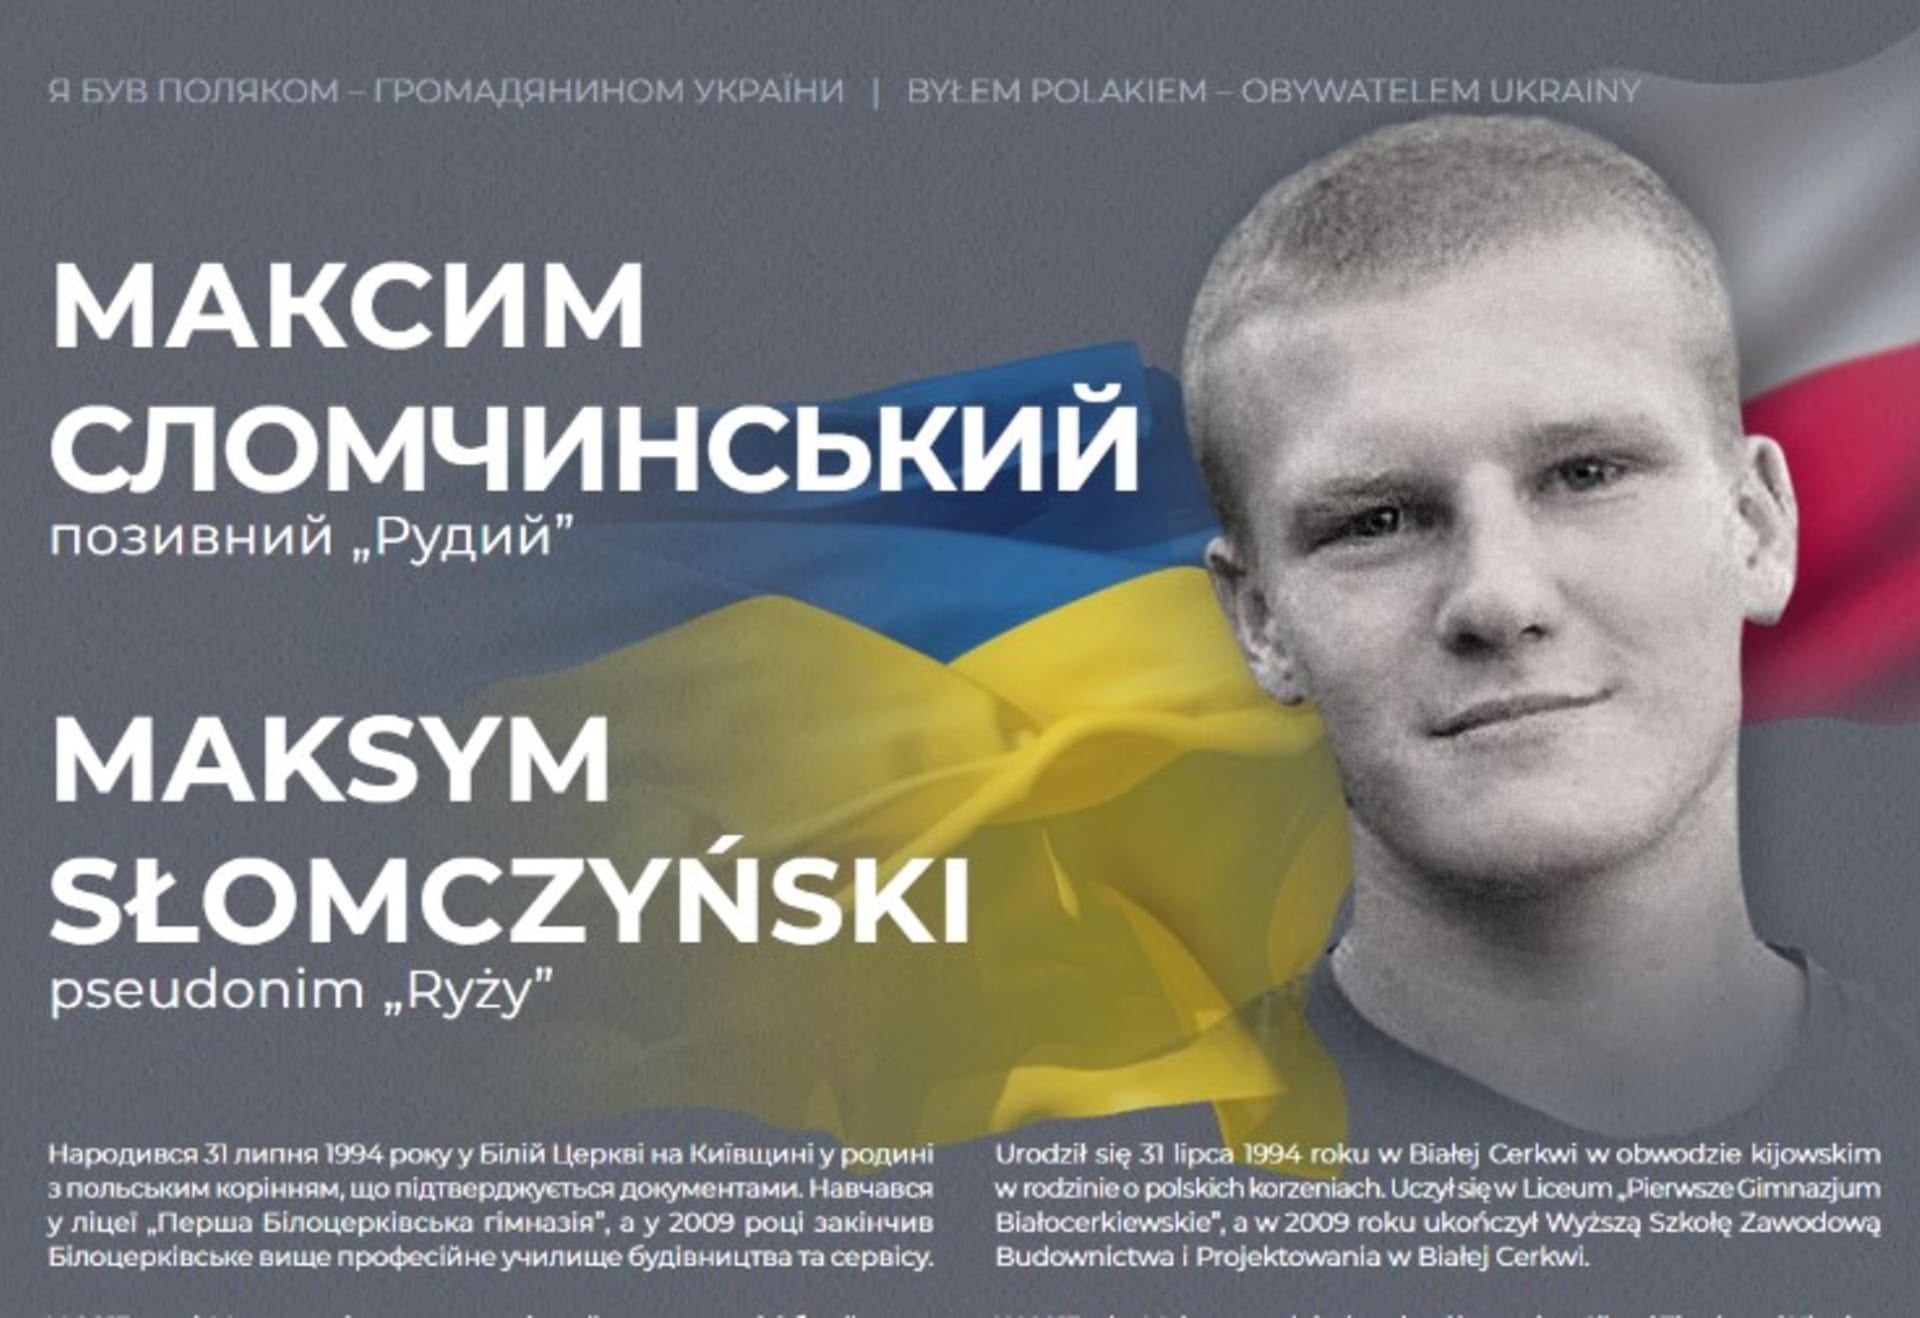 Ukrajinský voják Maksym Słomczyński padl v bojích v oblasti Avdijivky, bylo mu 22 let.